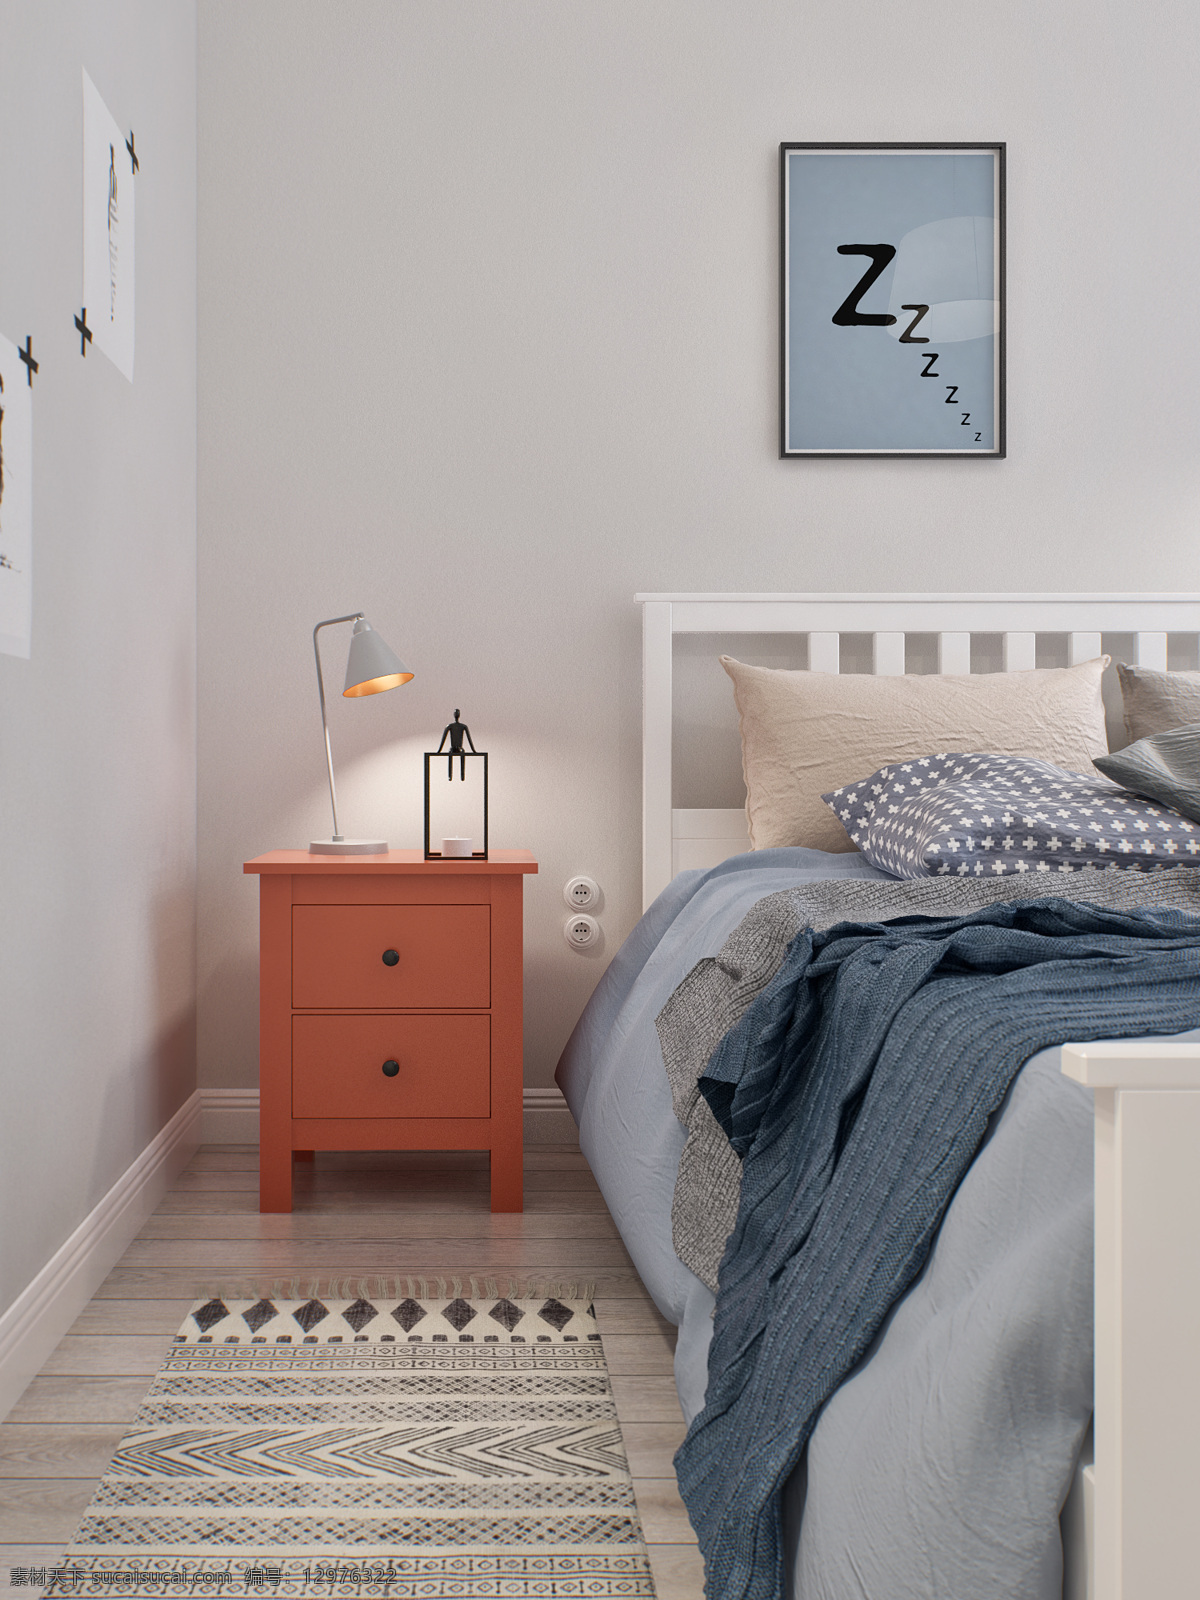 简约 时尚 卧室 壁画 装修 效果图 床铺 床头柜 灰色墙壁 浅色木地板 台灯